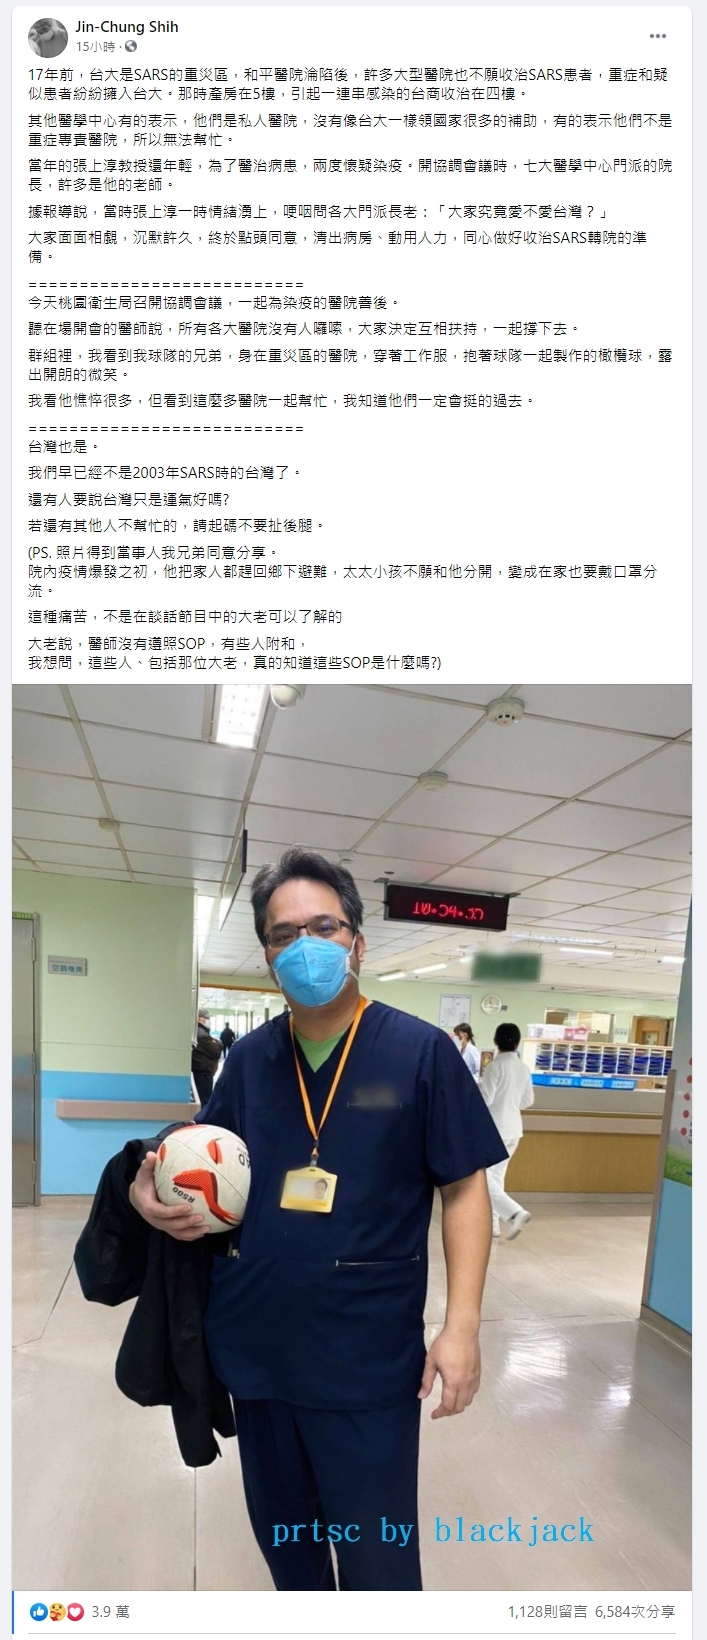 台大婦產科醫師施景中臉書貼出吳鴻康醫師照片